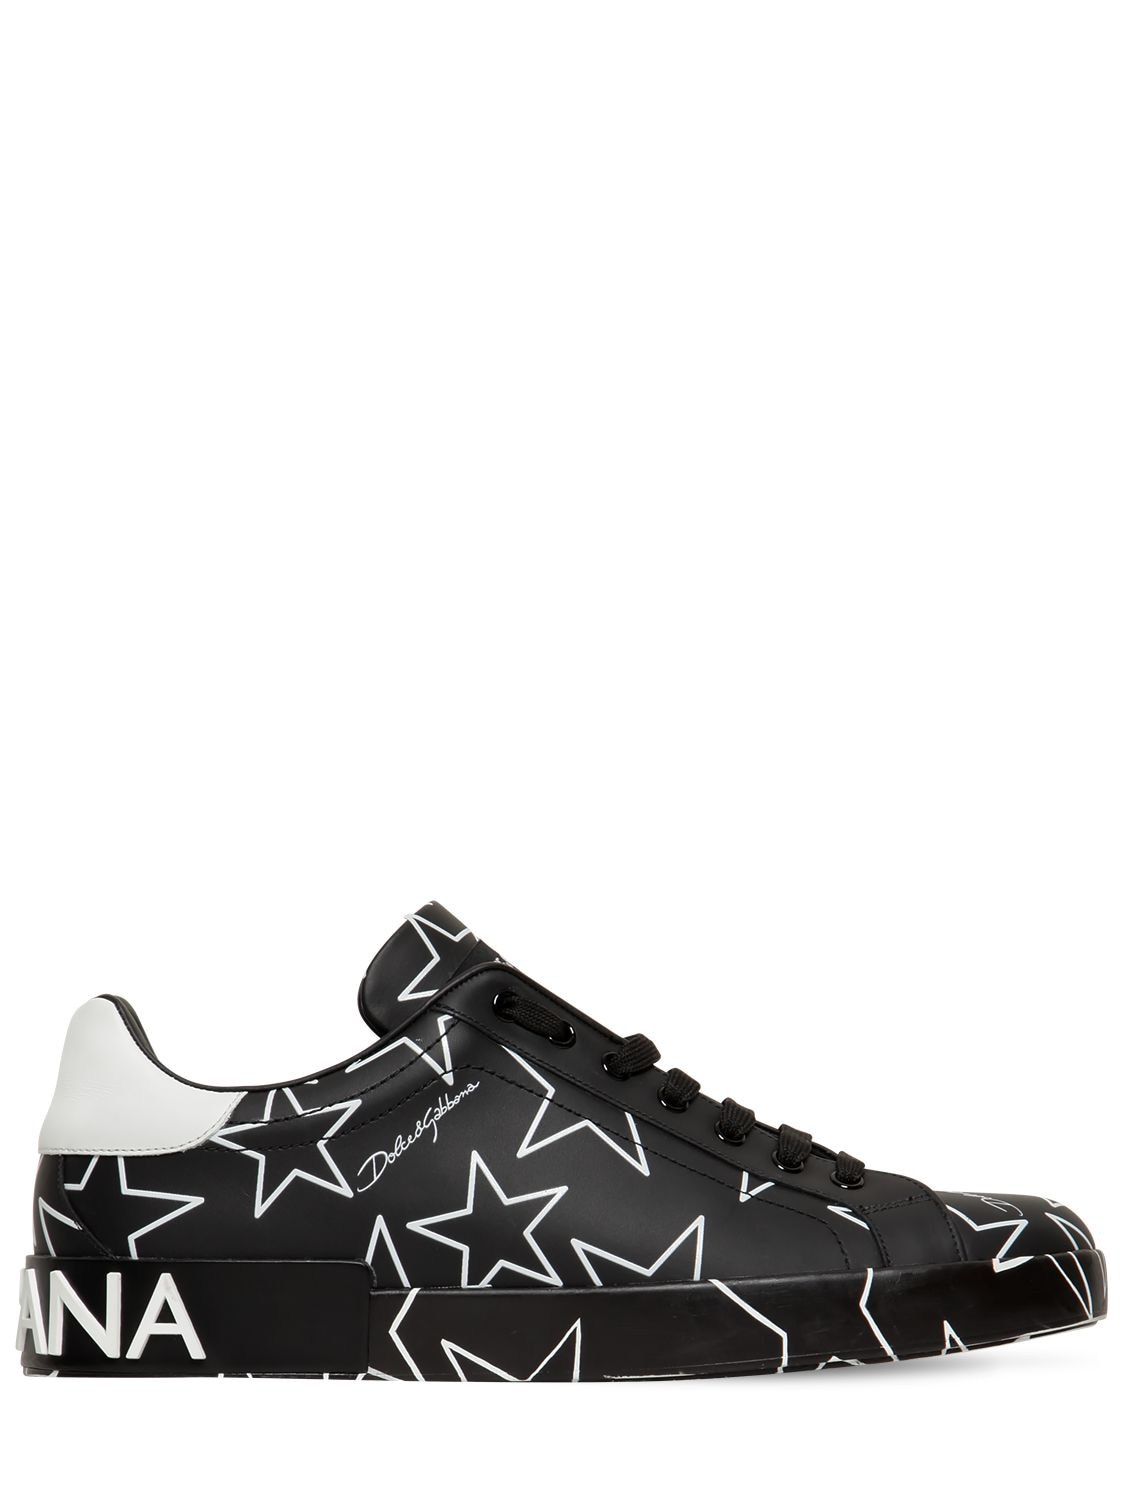 DOLCE & GABBANA "PORTOFINO STARS"皮革运动鞋,71I012012-SE4ZNUM1